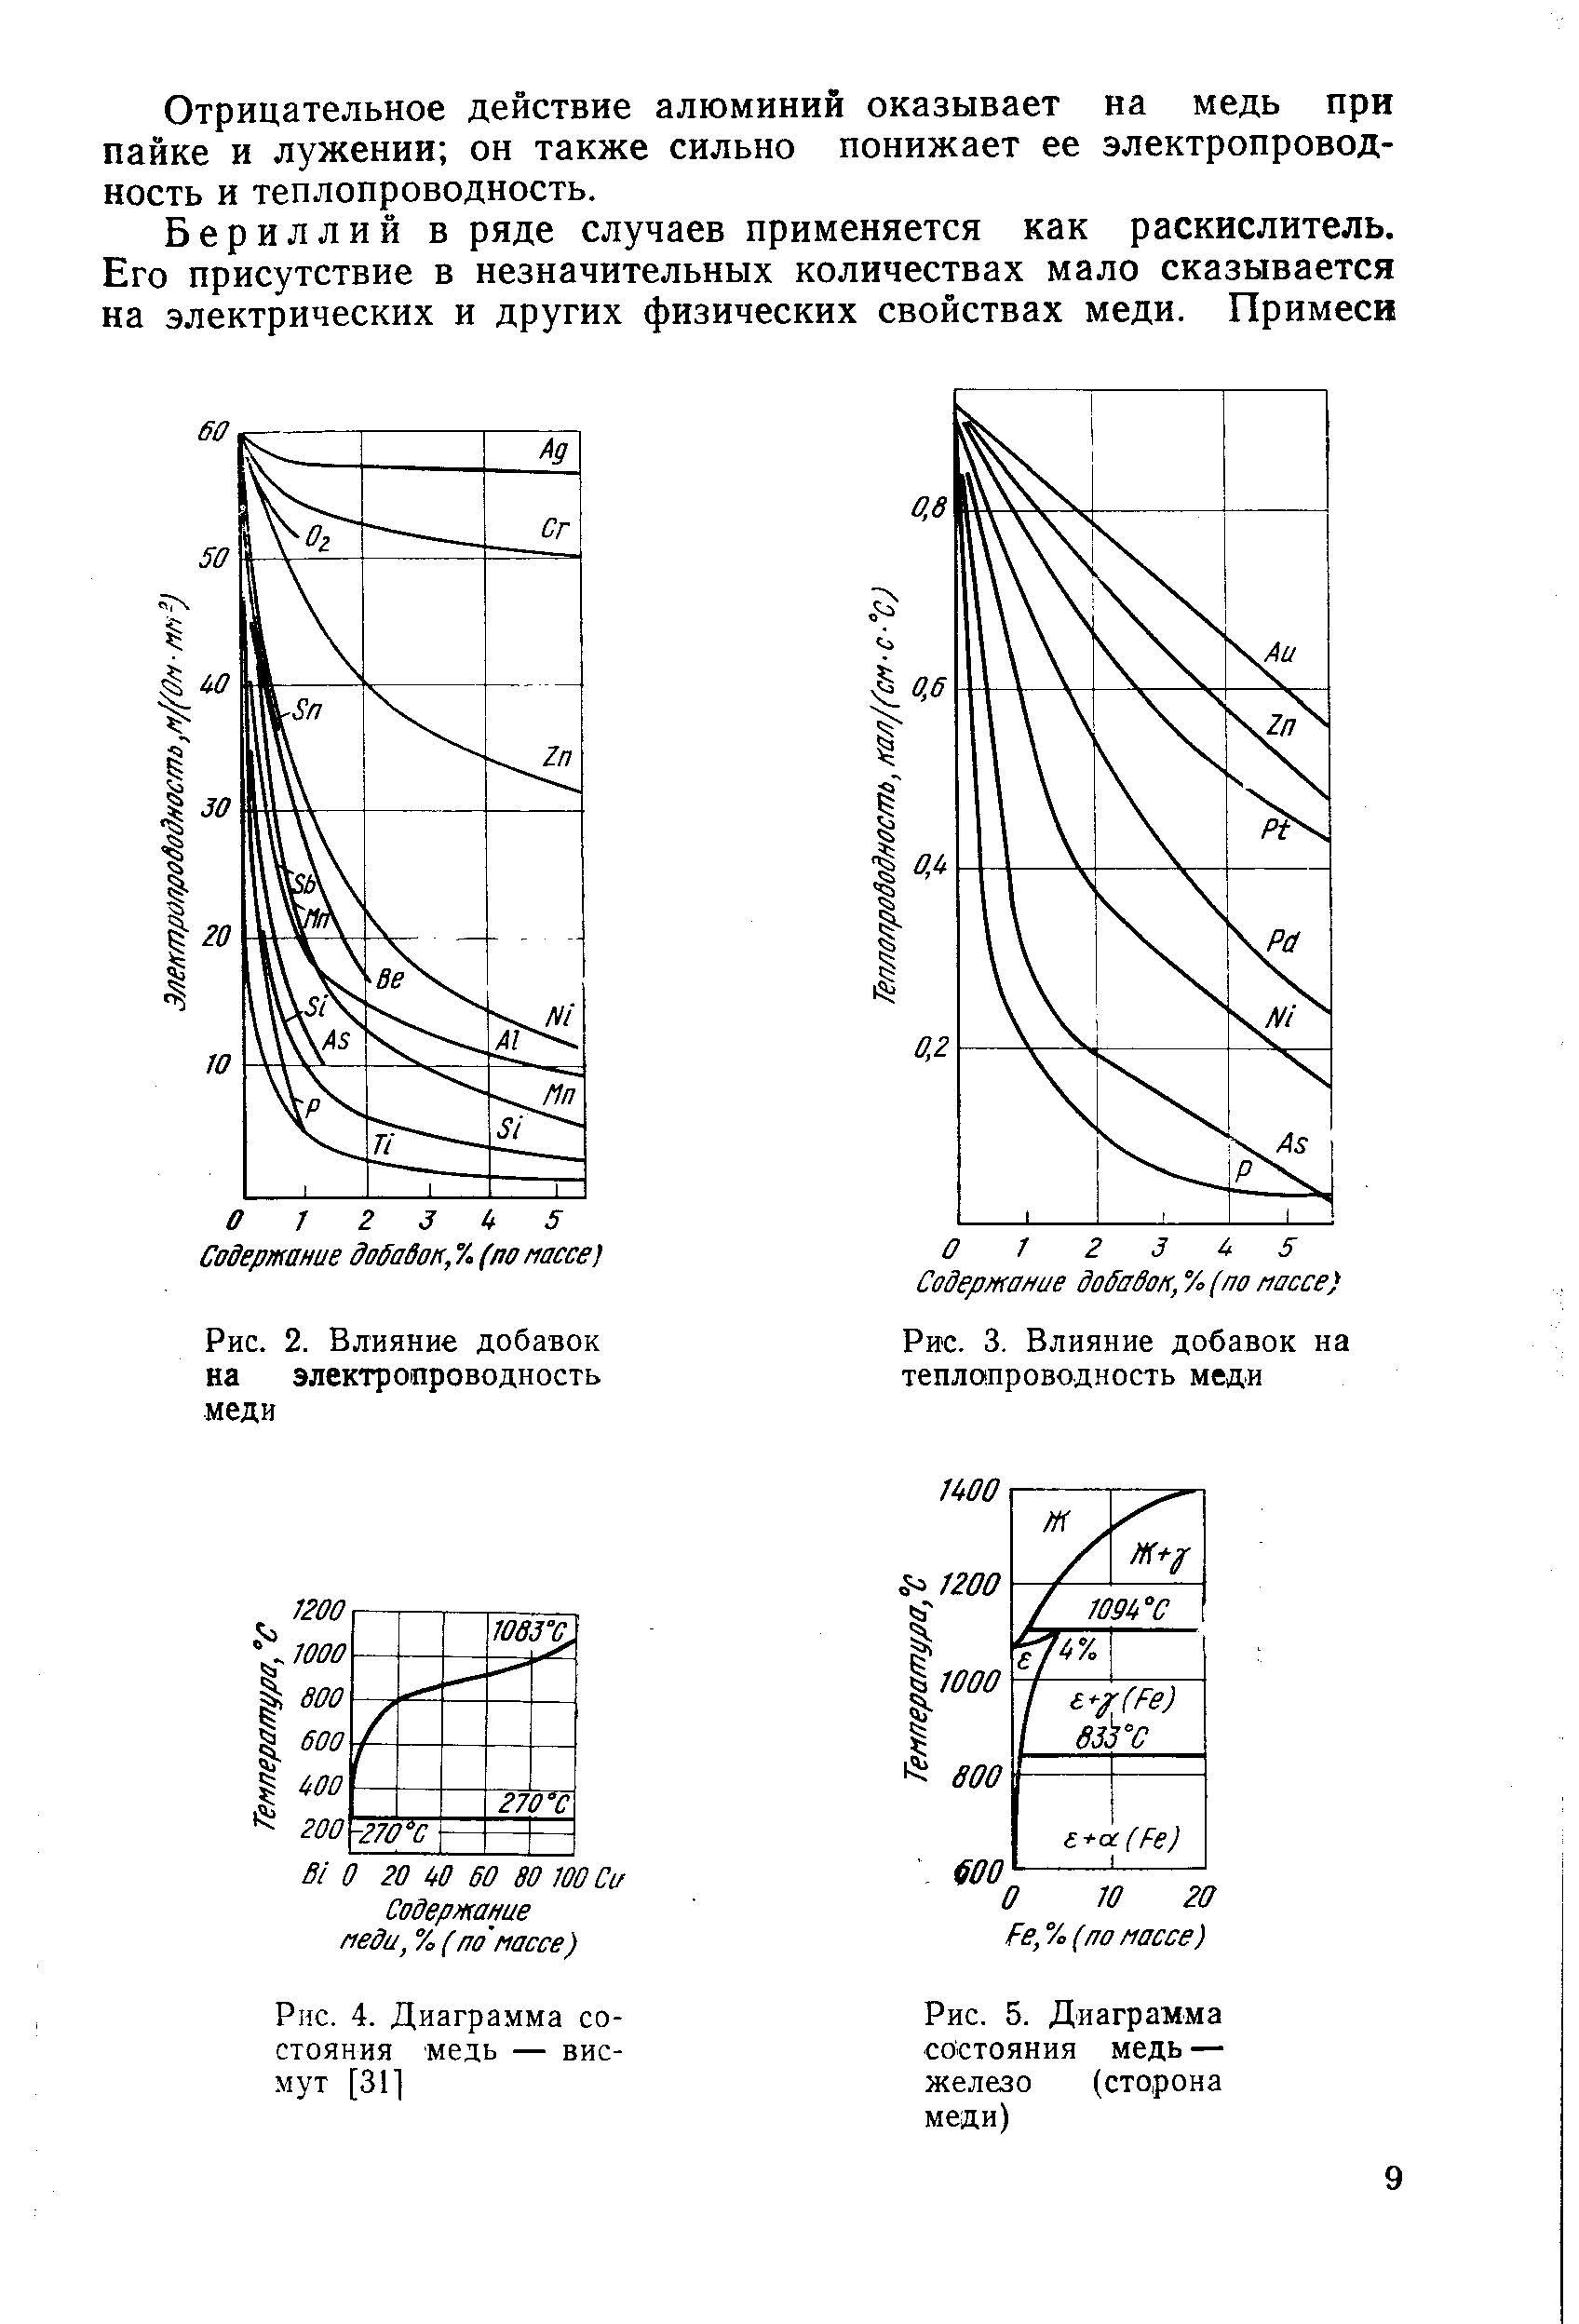 Рис. 5. Диаграмма состояния медь — железо (сторона меди)
